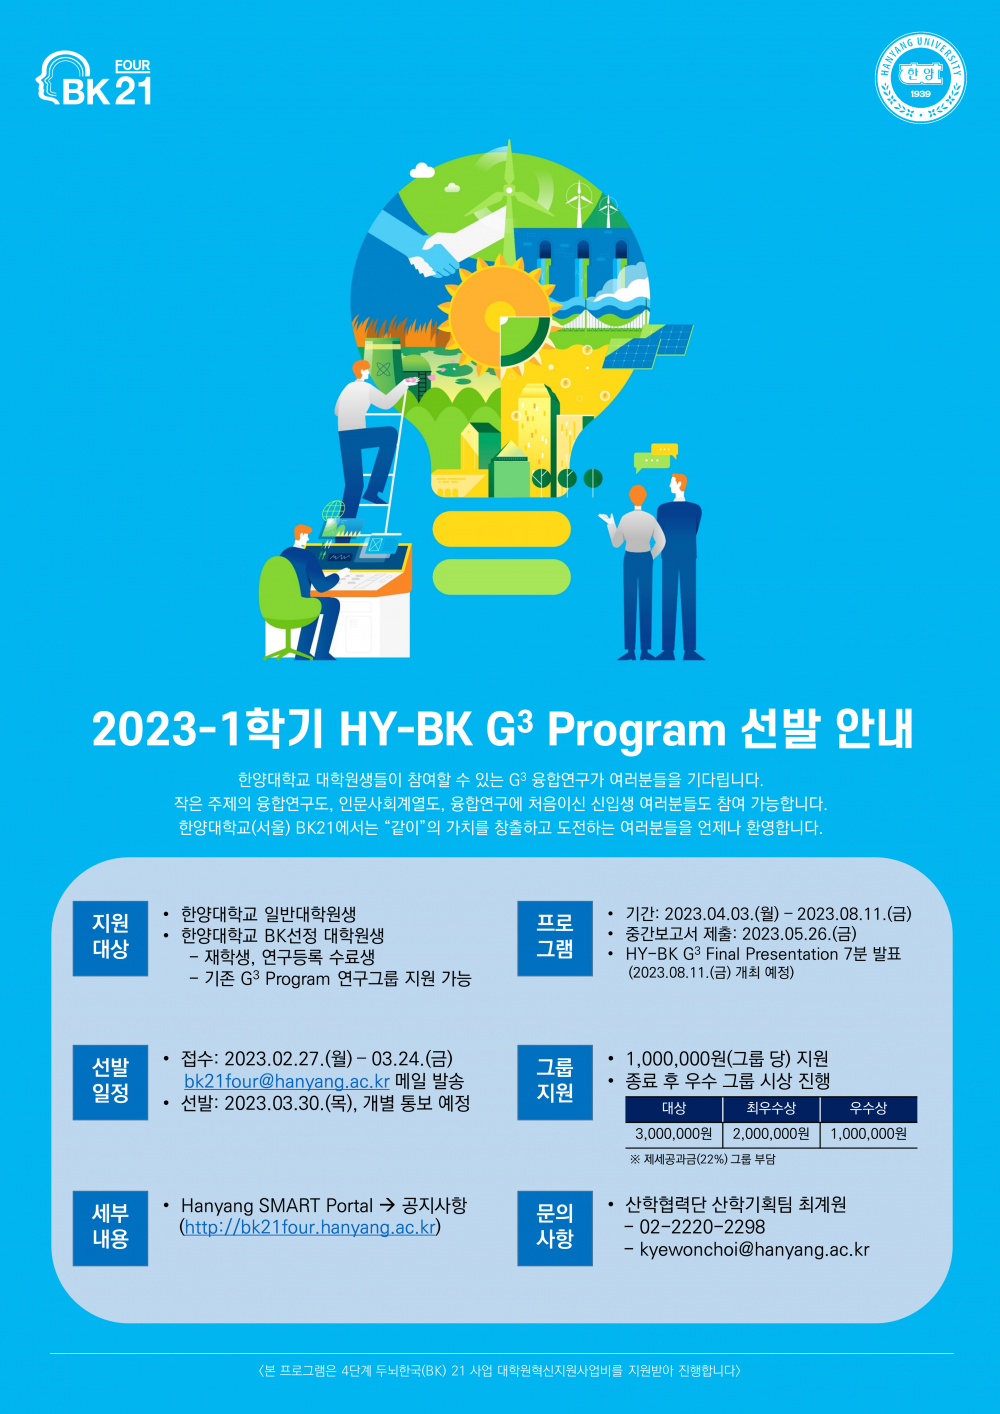 붙임 3. 2023-1학기 HY-BK G3 Program 포스터